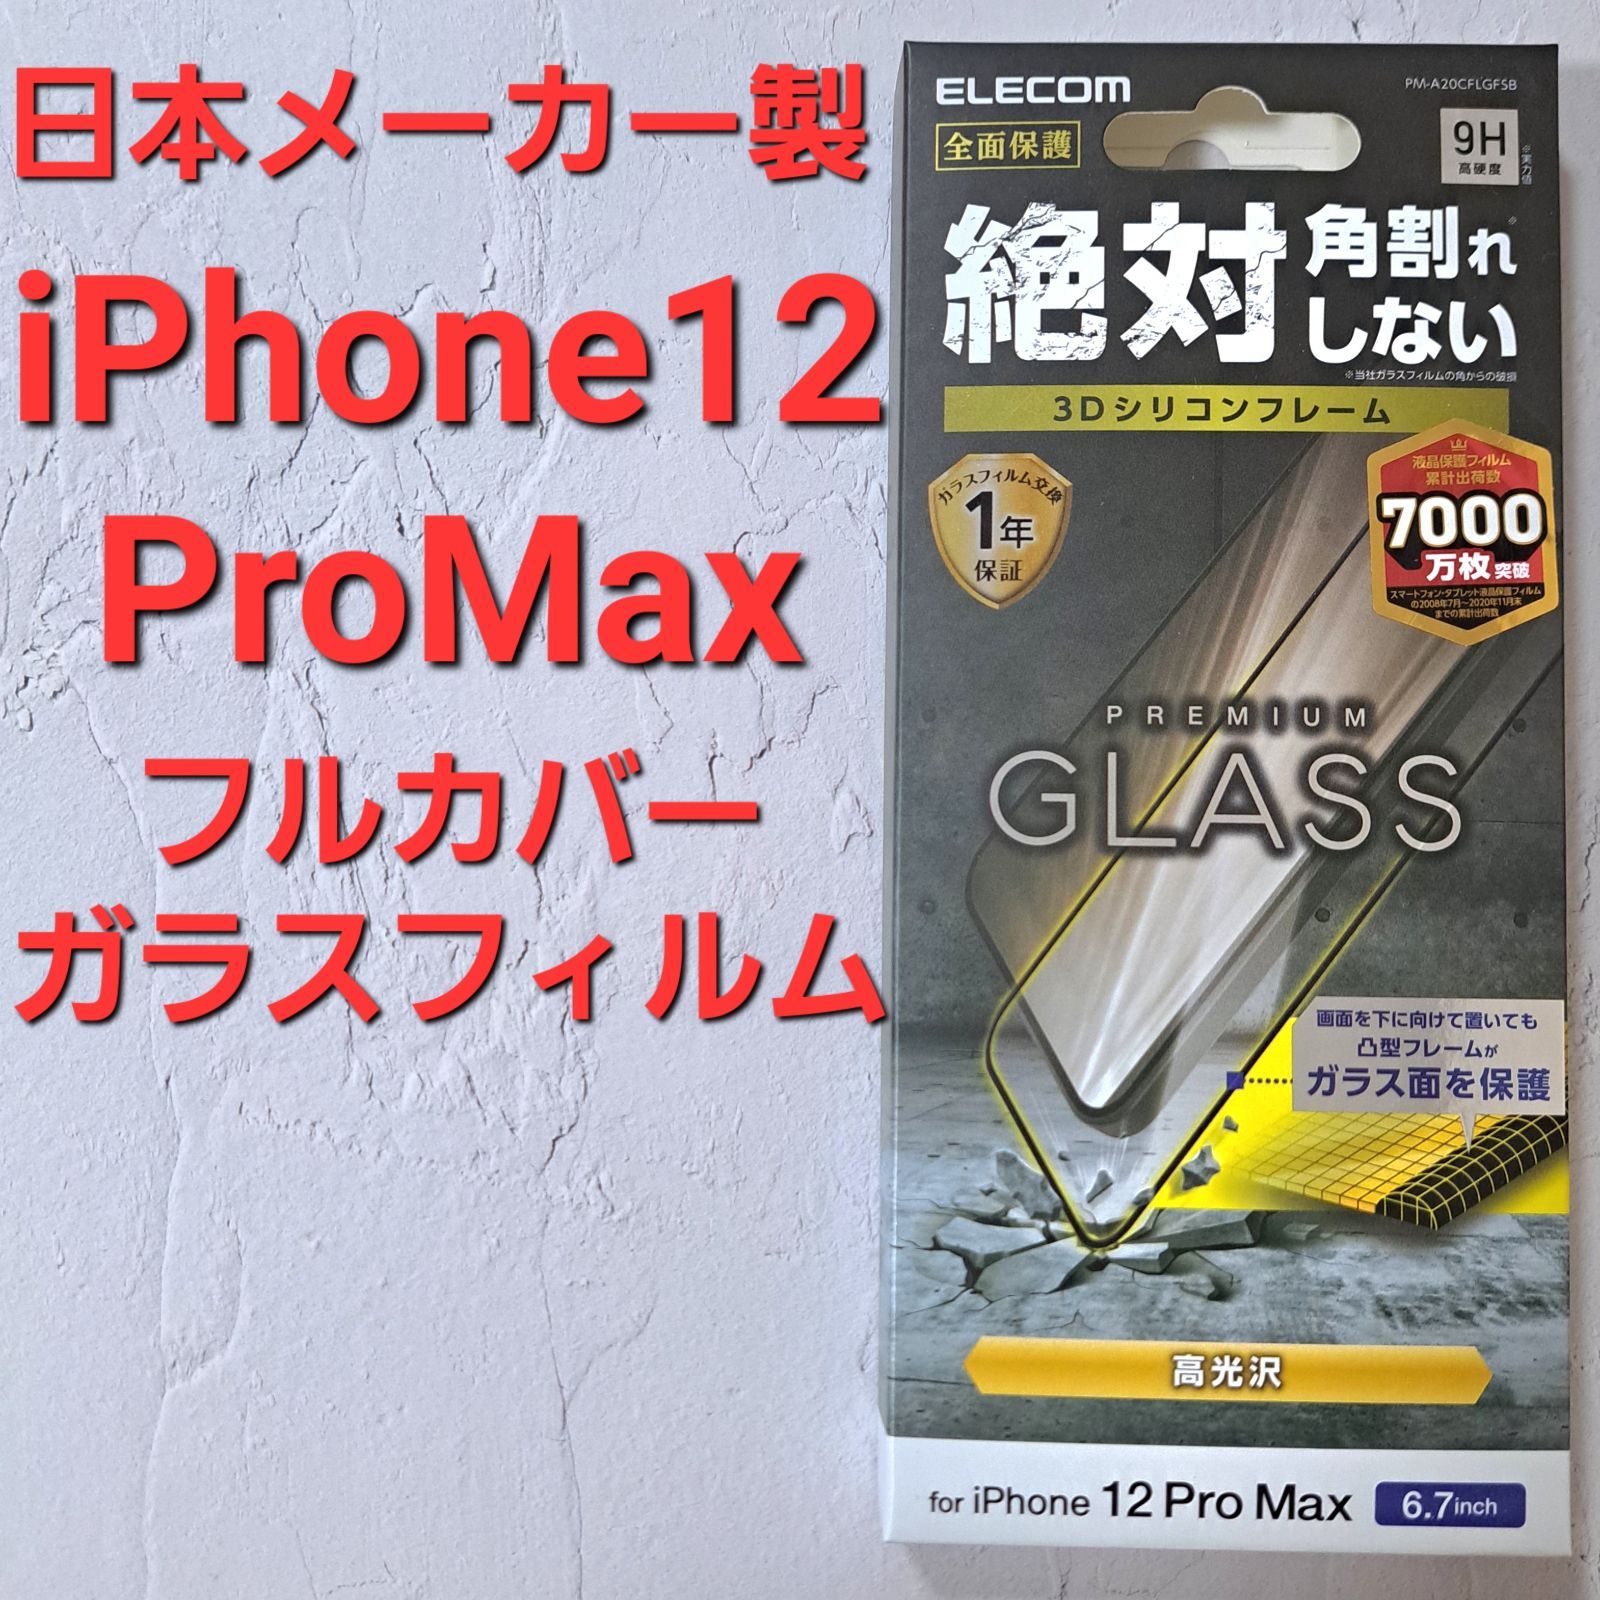 iPhone 12 Pro Max フルカバーガラスフィルム フレーム付